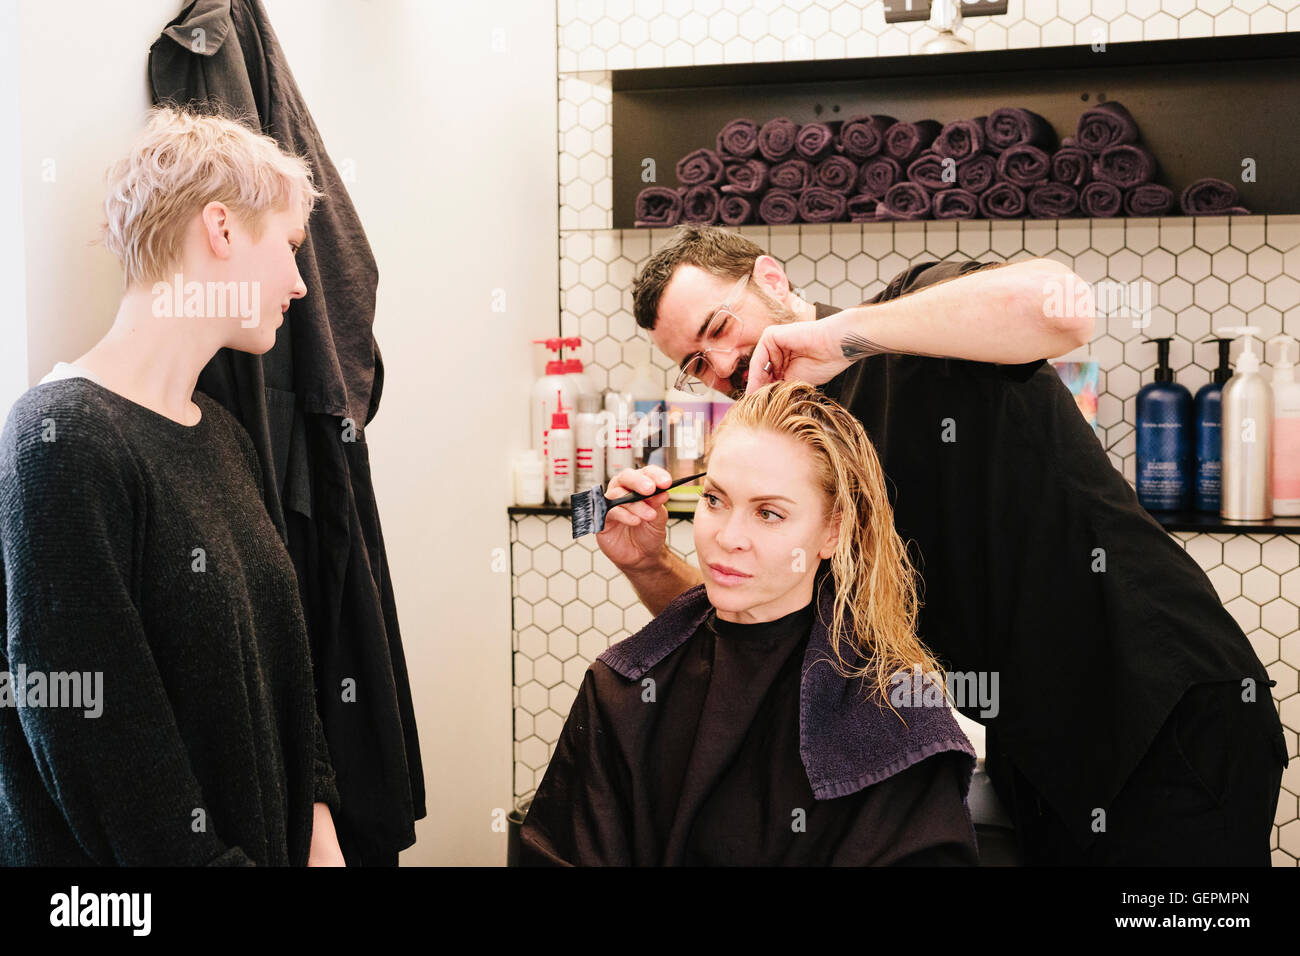 Un coiffeur couper les cheveux d'une femme dans un salon de coiffure. Banque D'Images